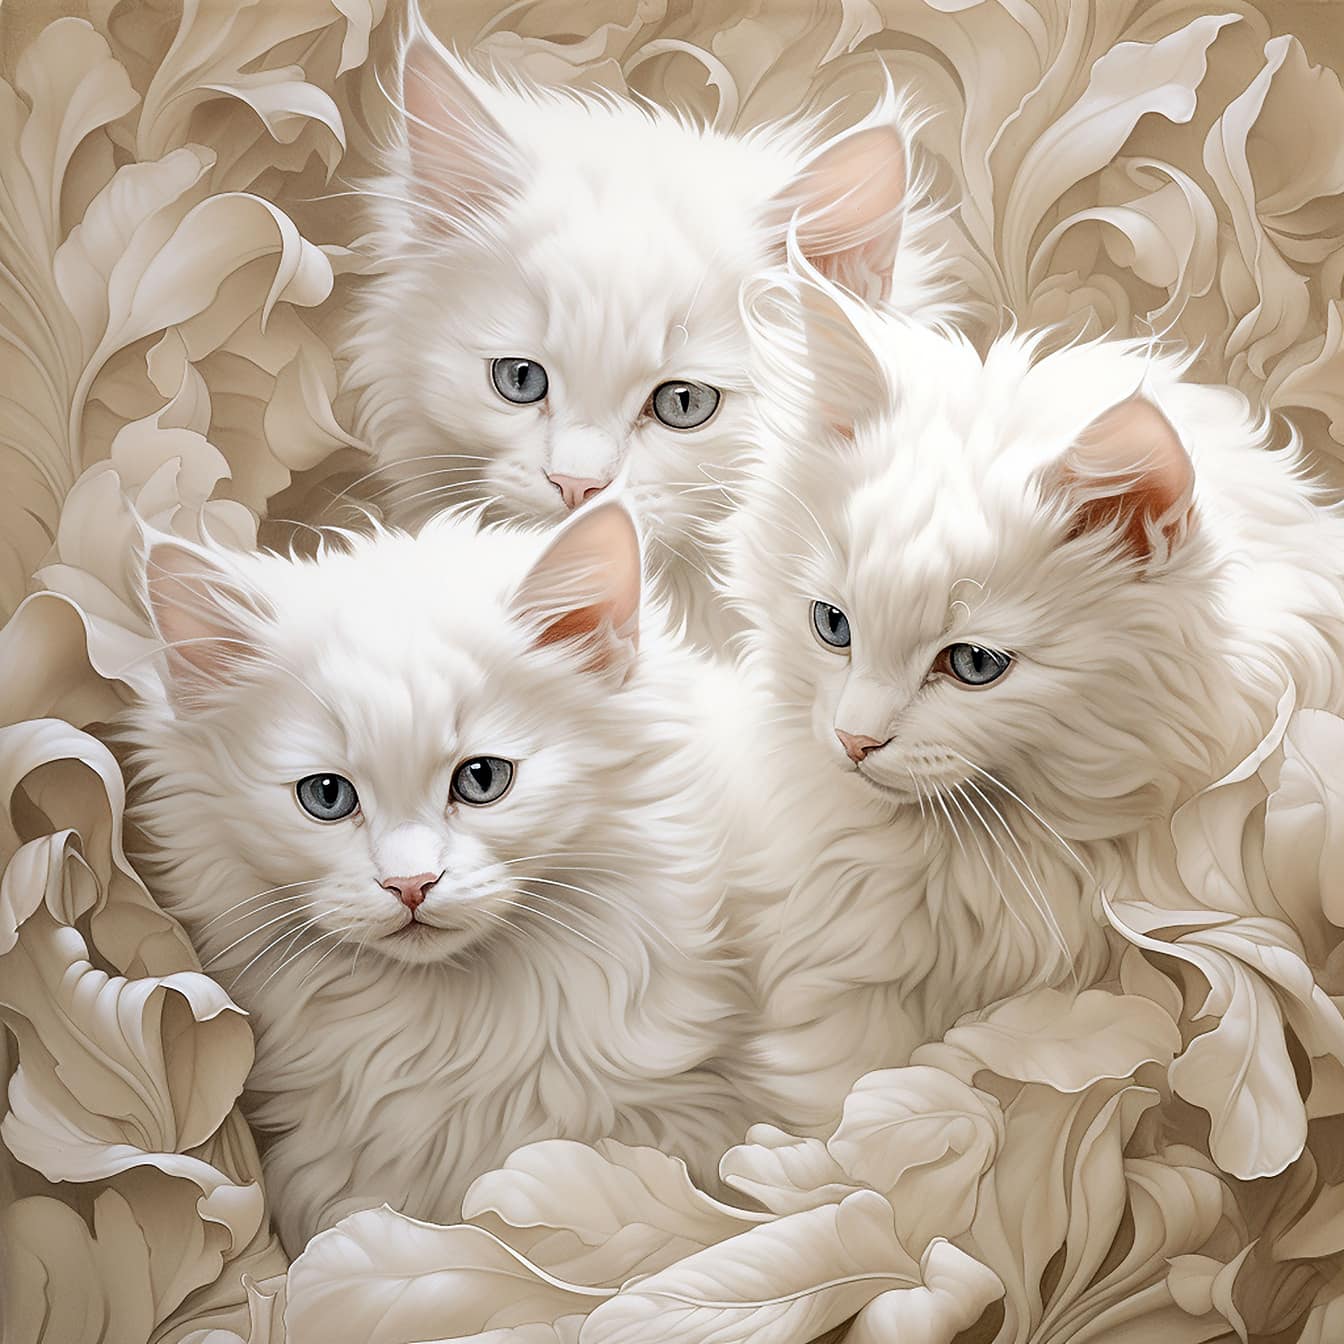 3匹の愛らしい毛むくじゃらの白い子猫のバロック様式のイラスト